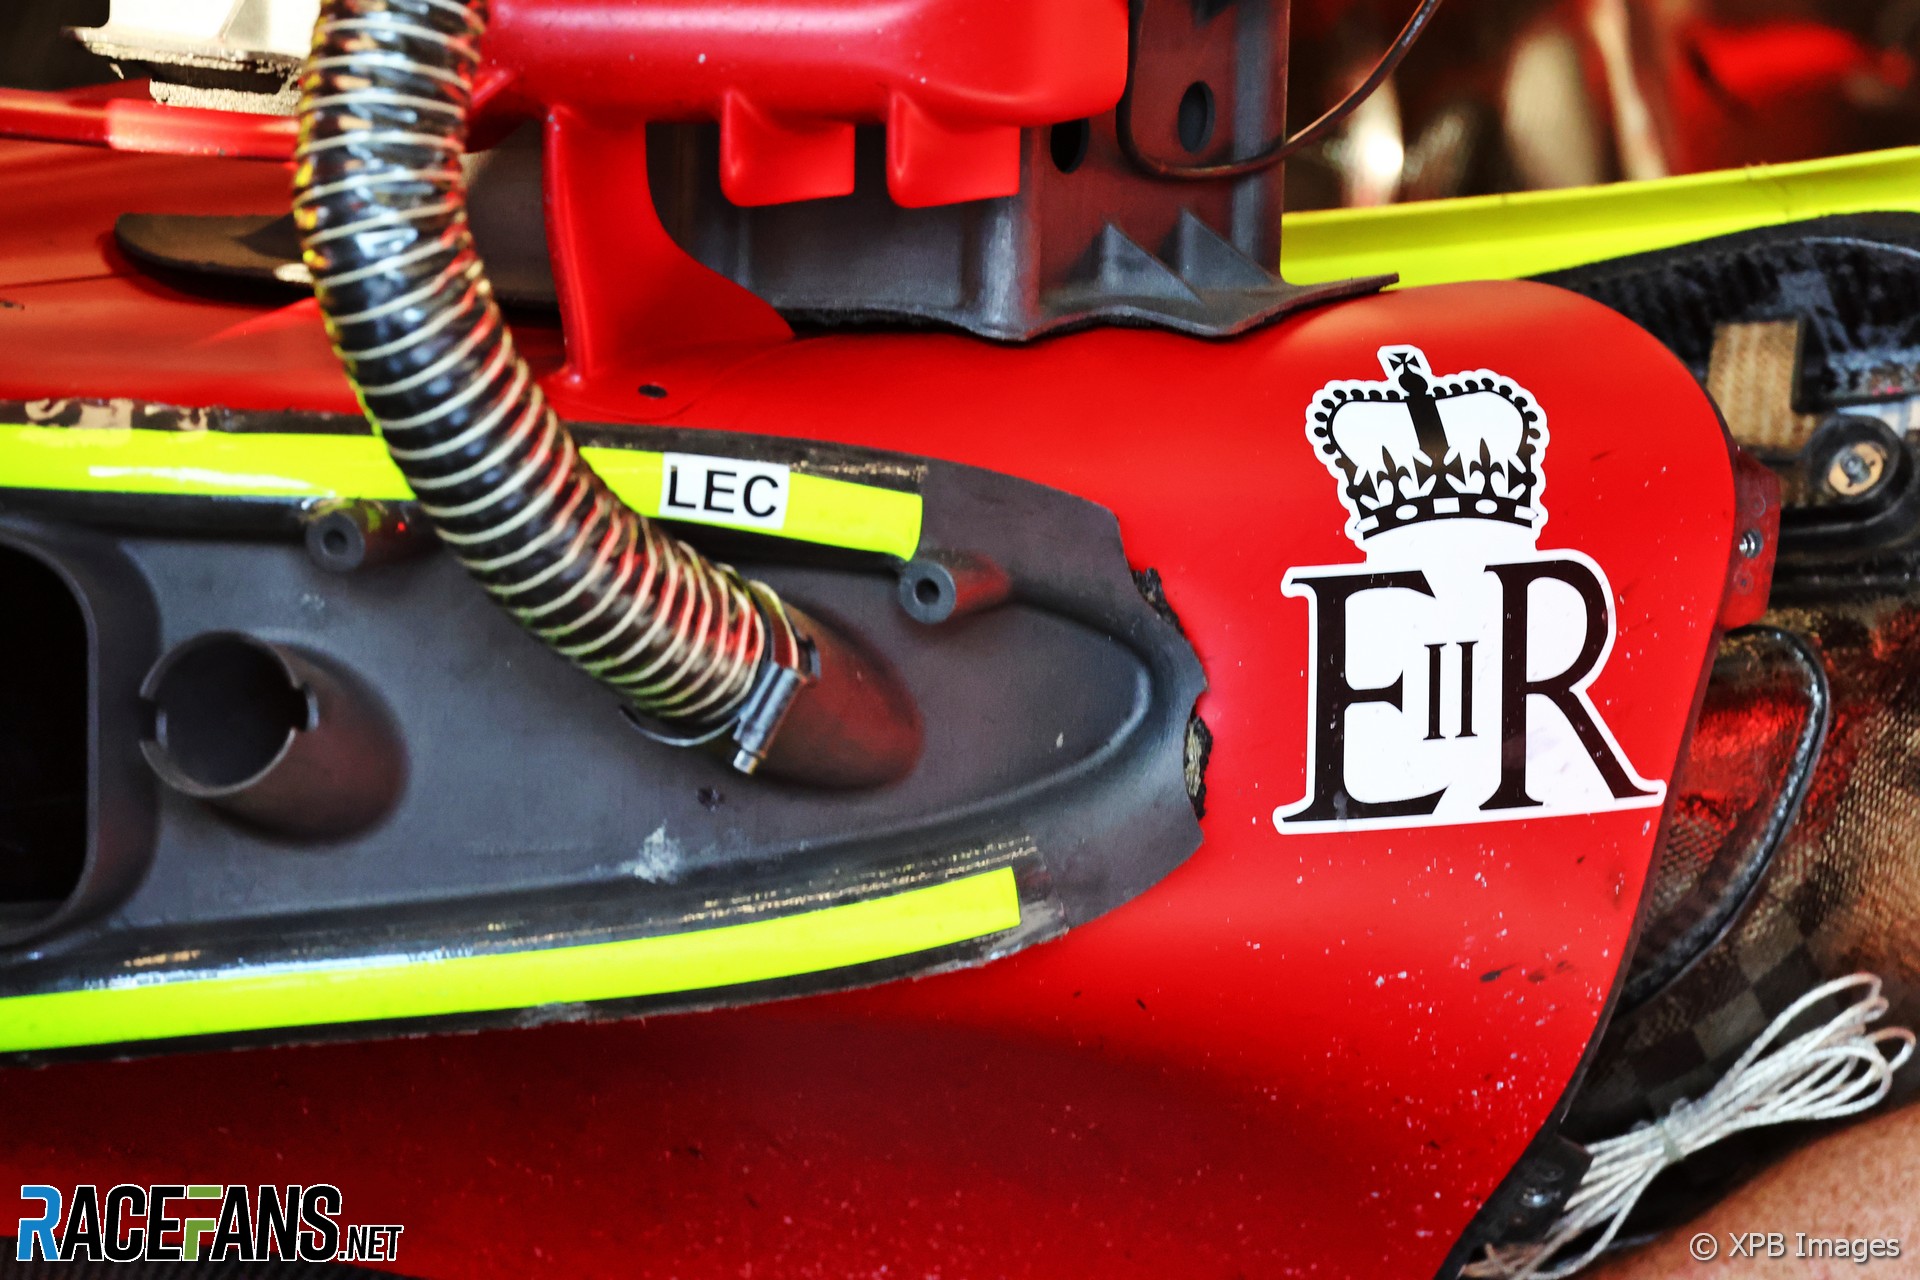 Ferrari tribute to Queen Elizabeth II, Monza, 2022